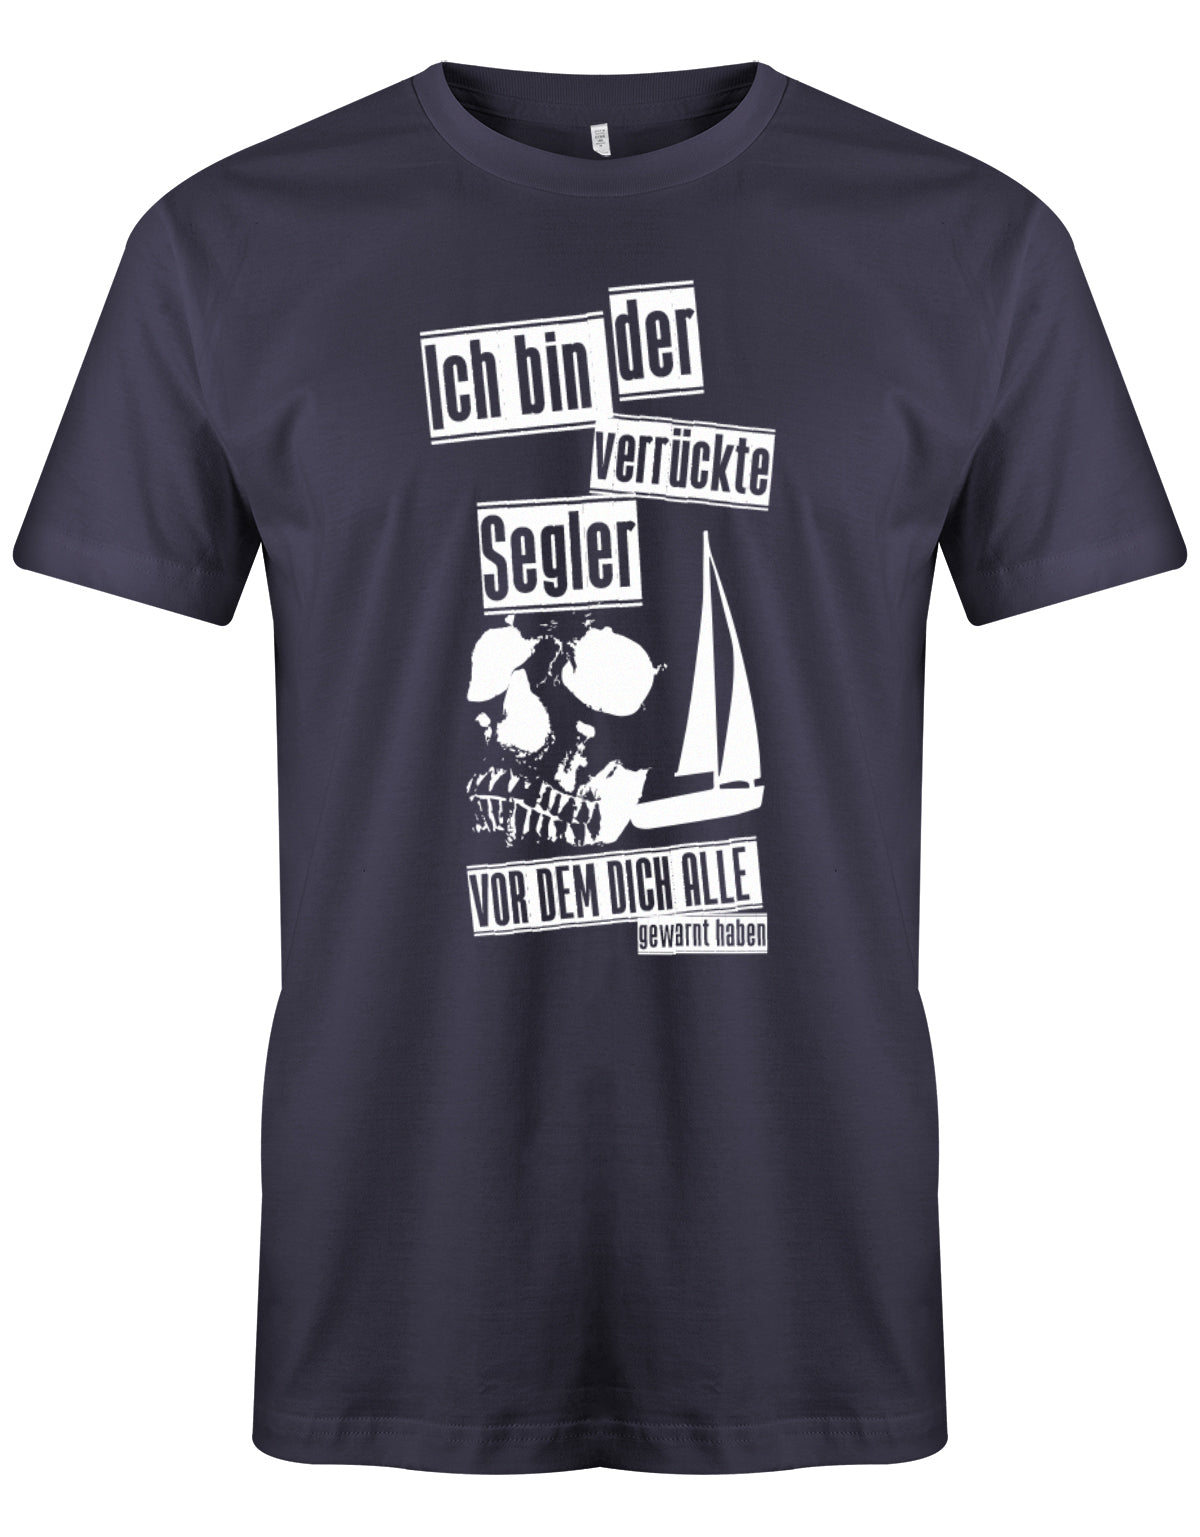 Das Segler t-shirt bedruckt mit "Ich bin der verrückte Segler vor dem dich alle gewarnt haben". Navy